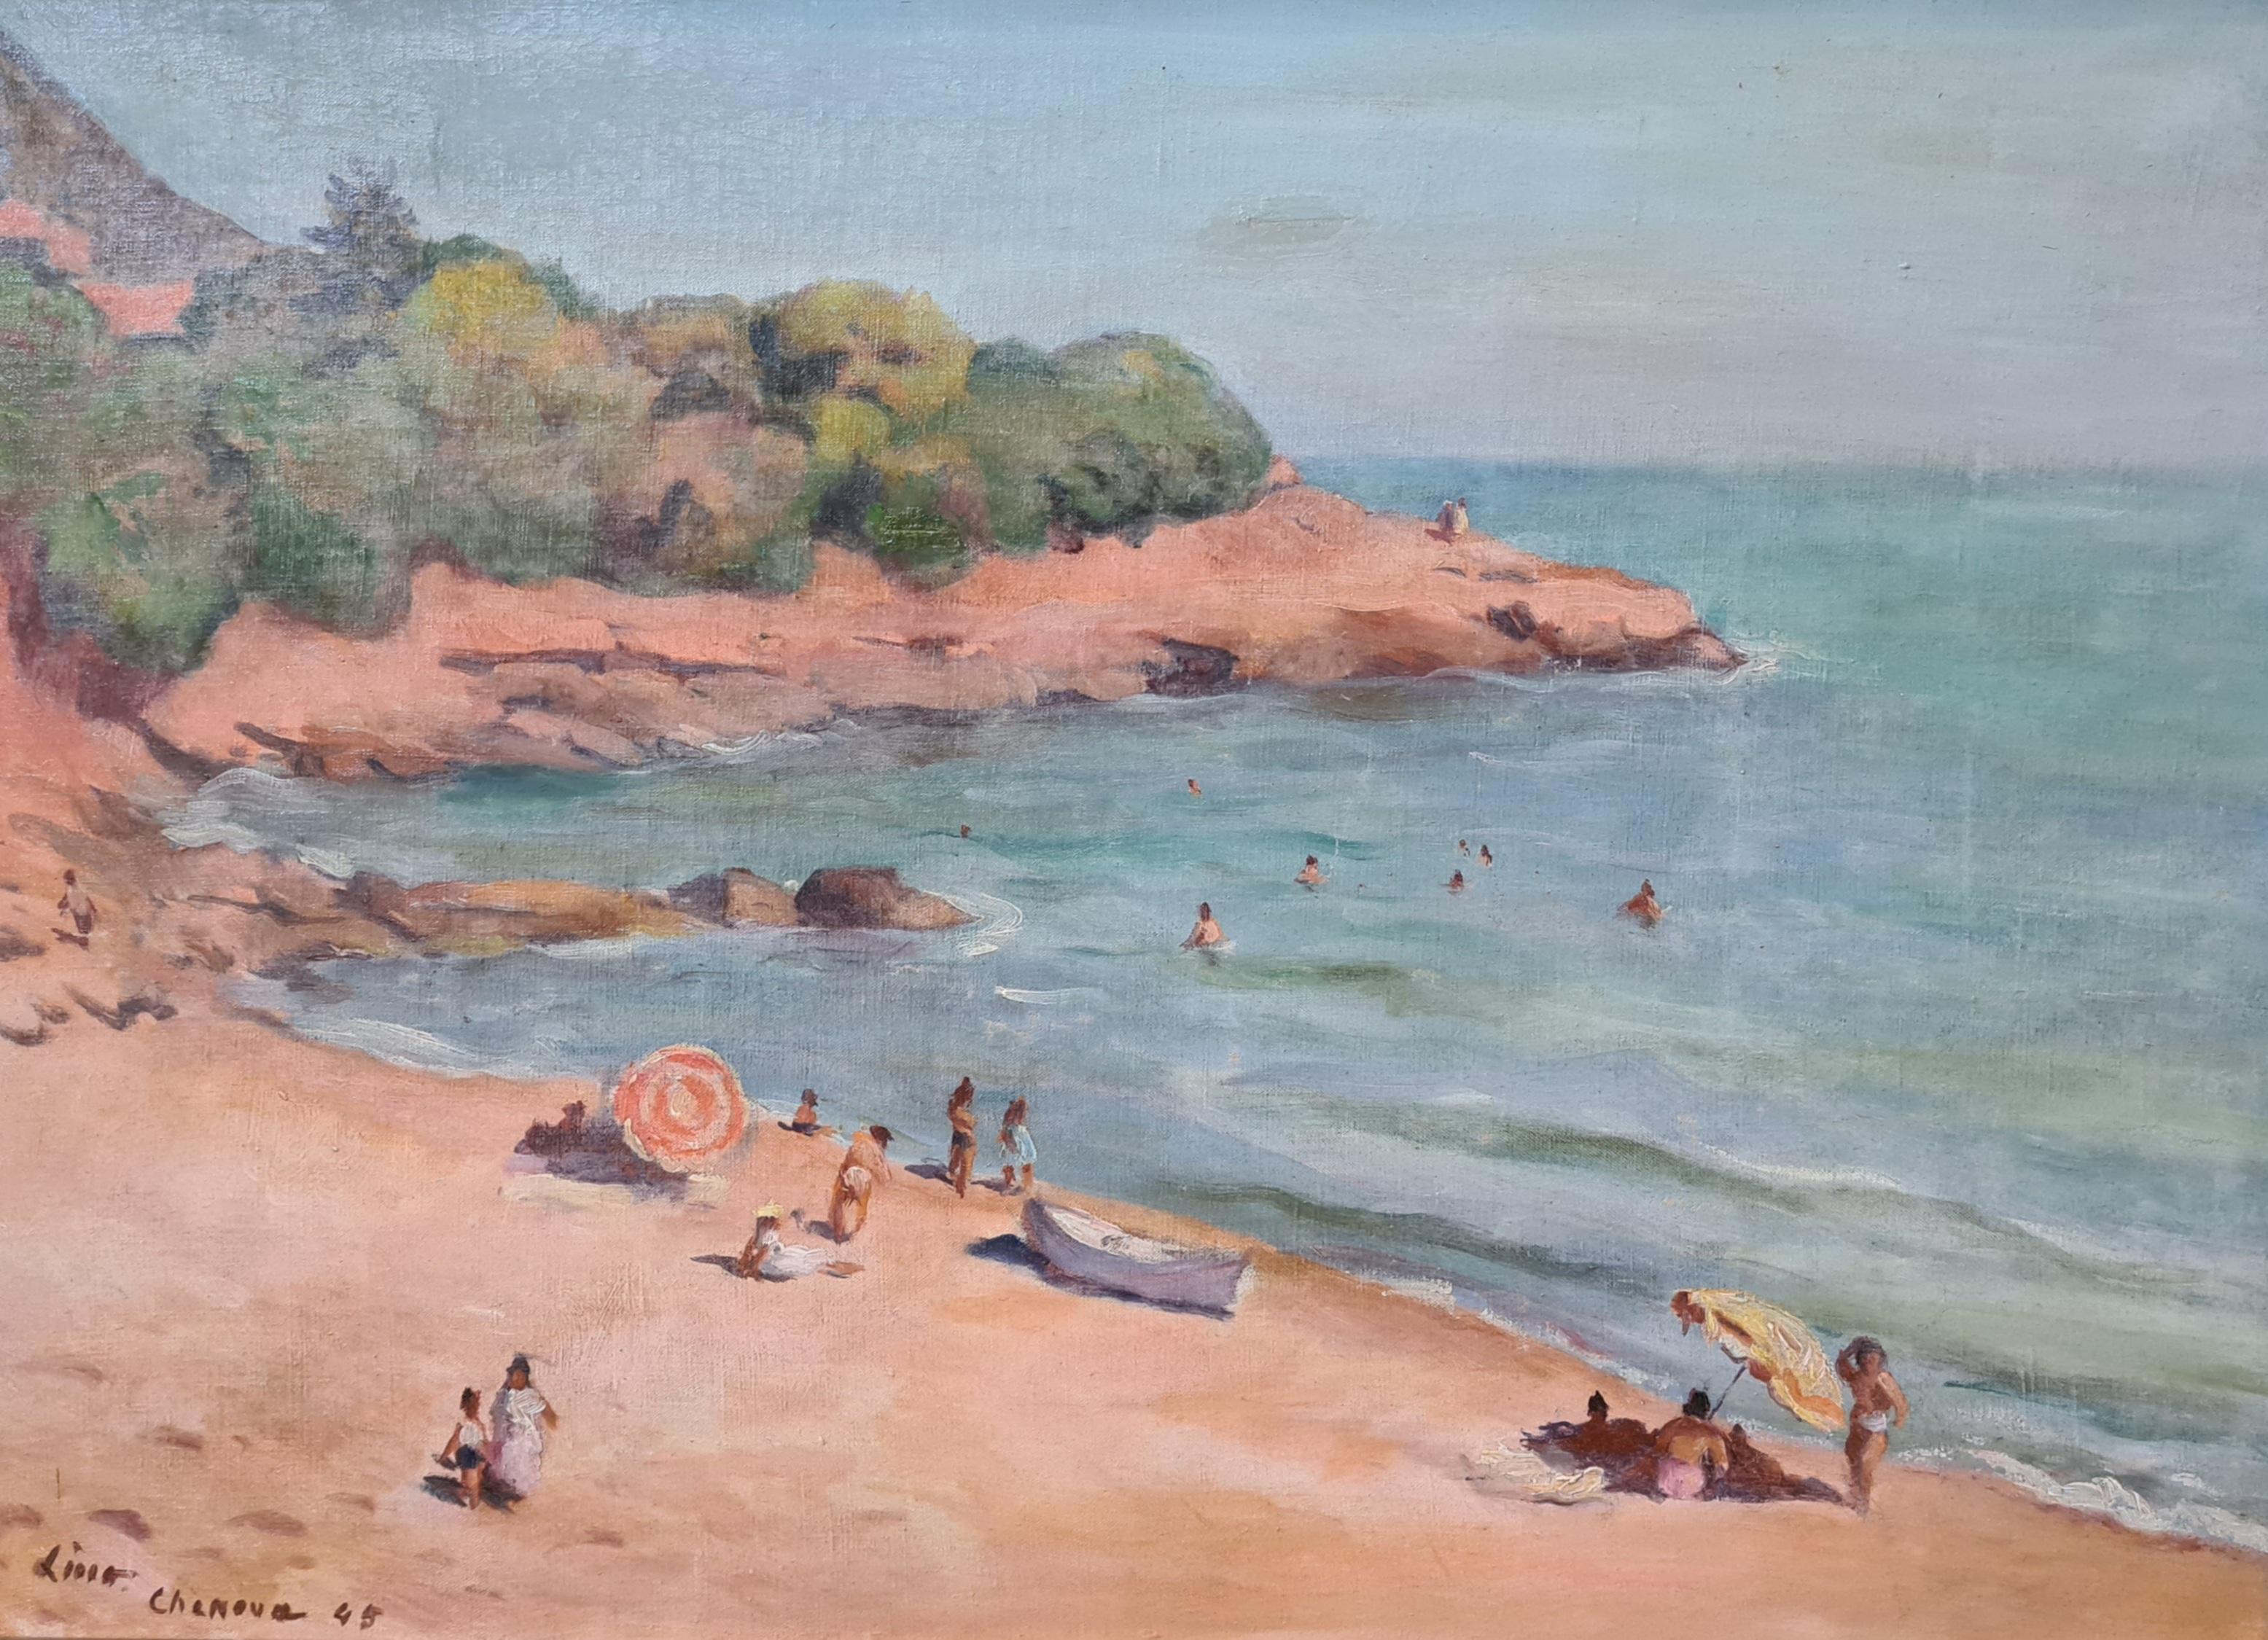  Scène de plage orientaliste, Plage de Chenoua, Algérie, huile sur toile.